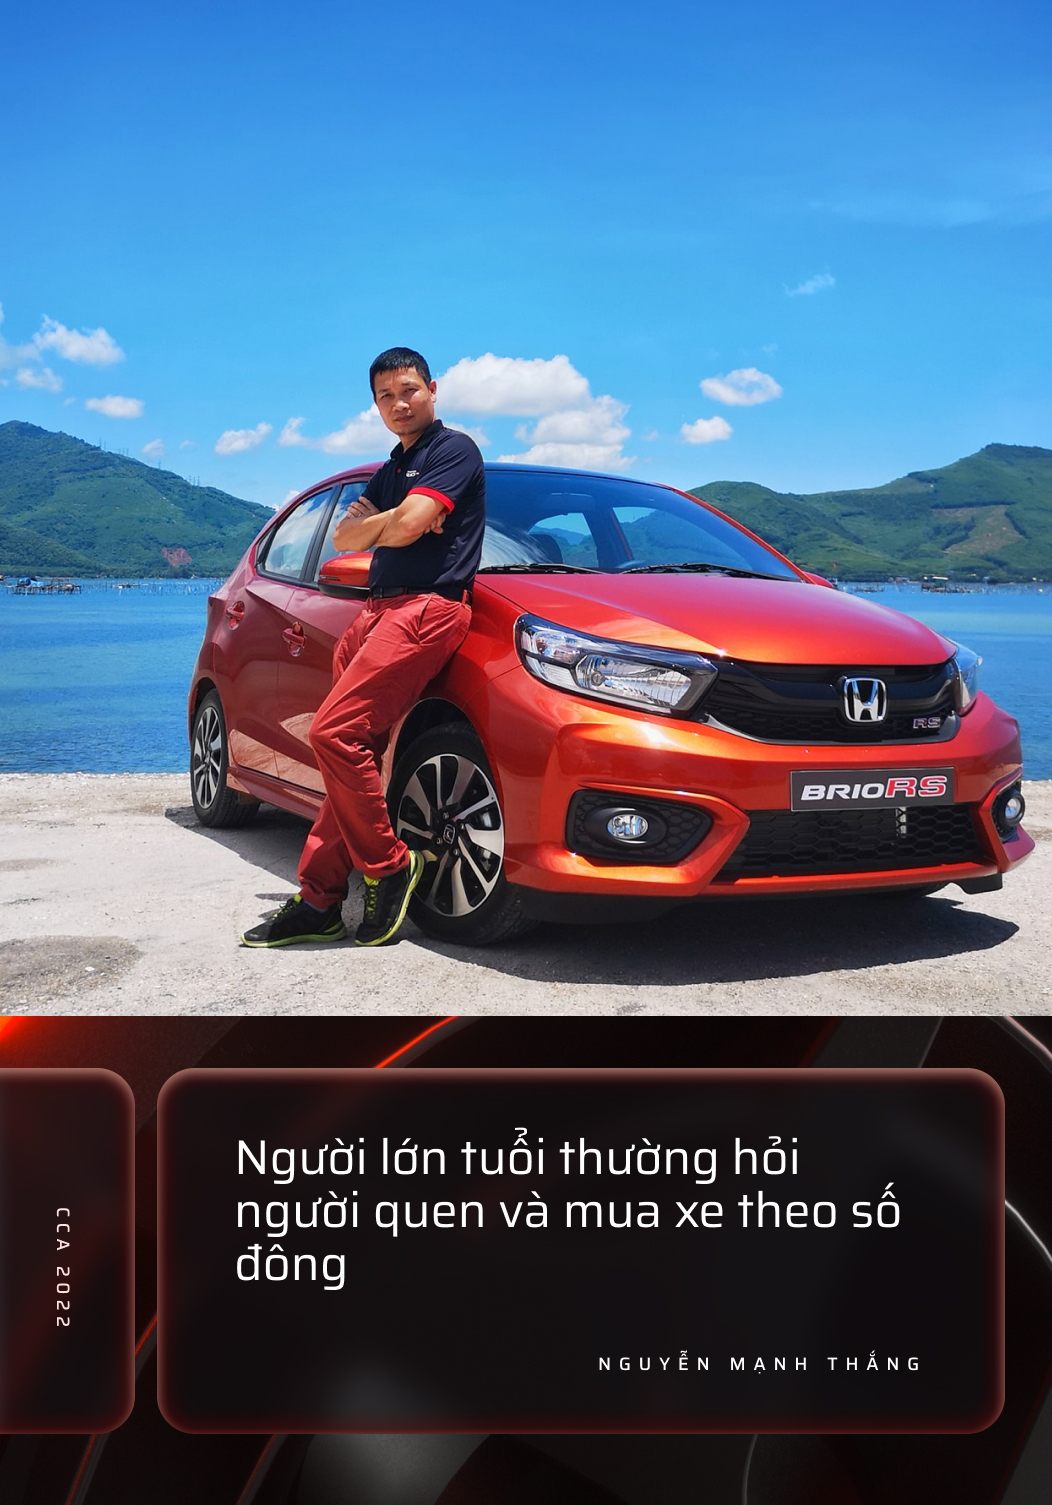 Chuyên gia Nguyễn Mạnh Thắng: Người trẻ mua ô tô ít bị tác động bởi thương hiệu, còn người lớn tuổi ngược lại - Ảnh 1.